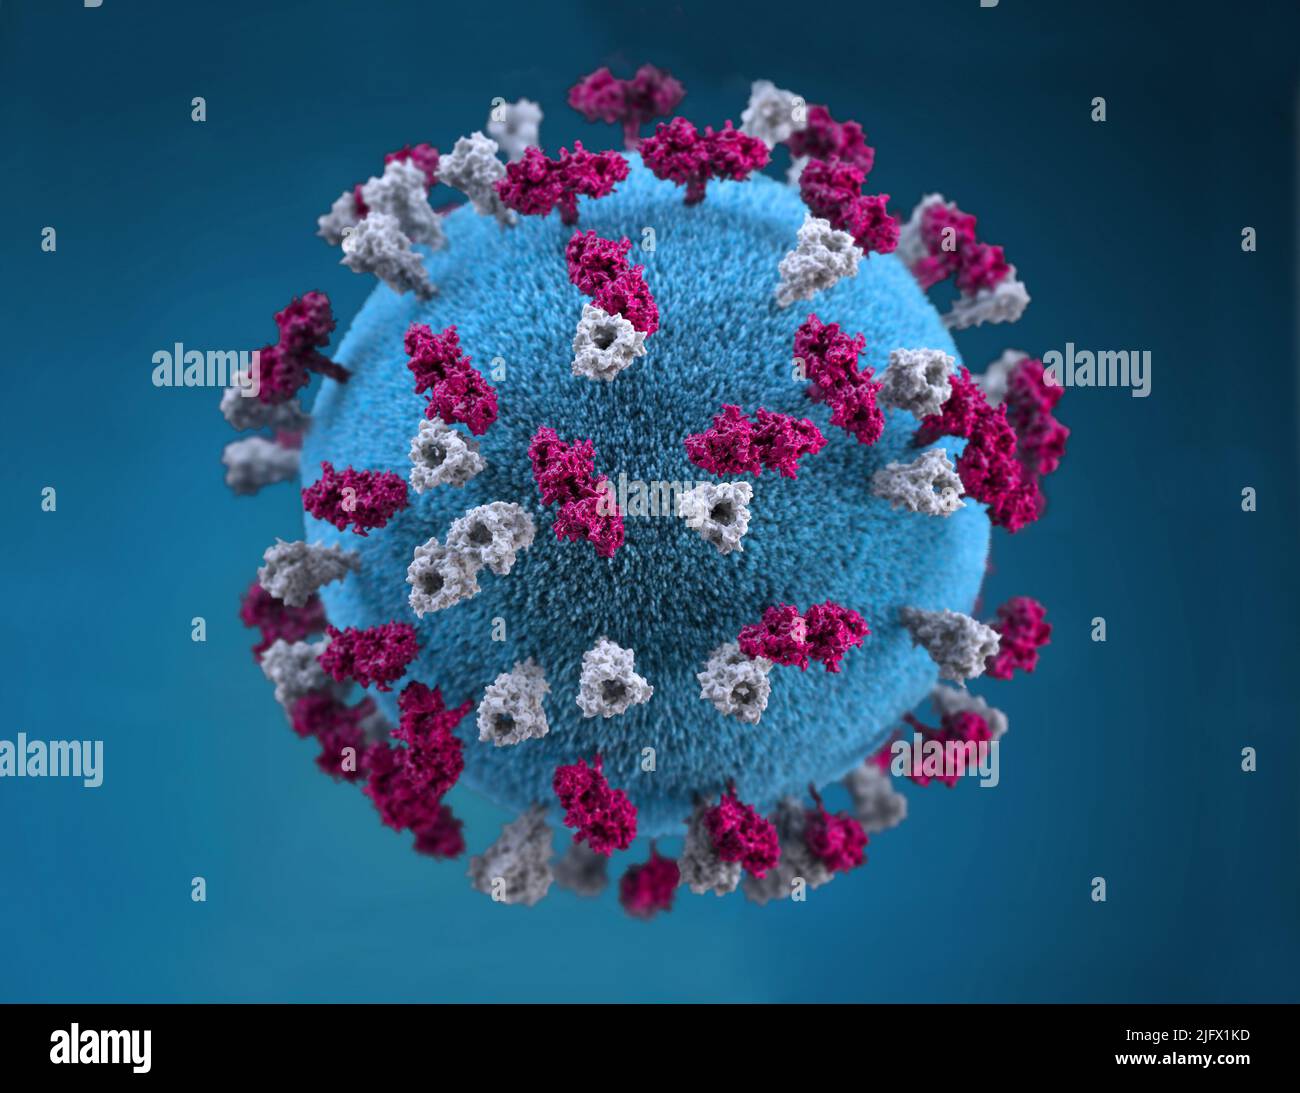 Questa illustrazione fornisce una rappresentazione grafica 3D di una particella di virus del morbillo di forma sferica, che è stata stufata con tubercoli glicoproteici. Questi borchie tubercolari maroon colorato, sono noti come proteine H (emoagglutinina), mentre quelli grigi colorati, rappresentavano ciò che si riferisce a proteine F (fusione). La proteina F è responsabile della fusione del virus e delle membrane delle cellule ospiti, della penetrazione virale e dell'emolisi. La proteina H è responsabile del legame dei virioni alle cellule. Credito CDC/A.M.Maiuri, A.Eckert Foto Stock